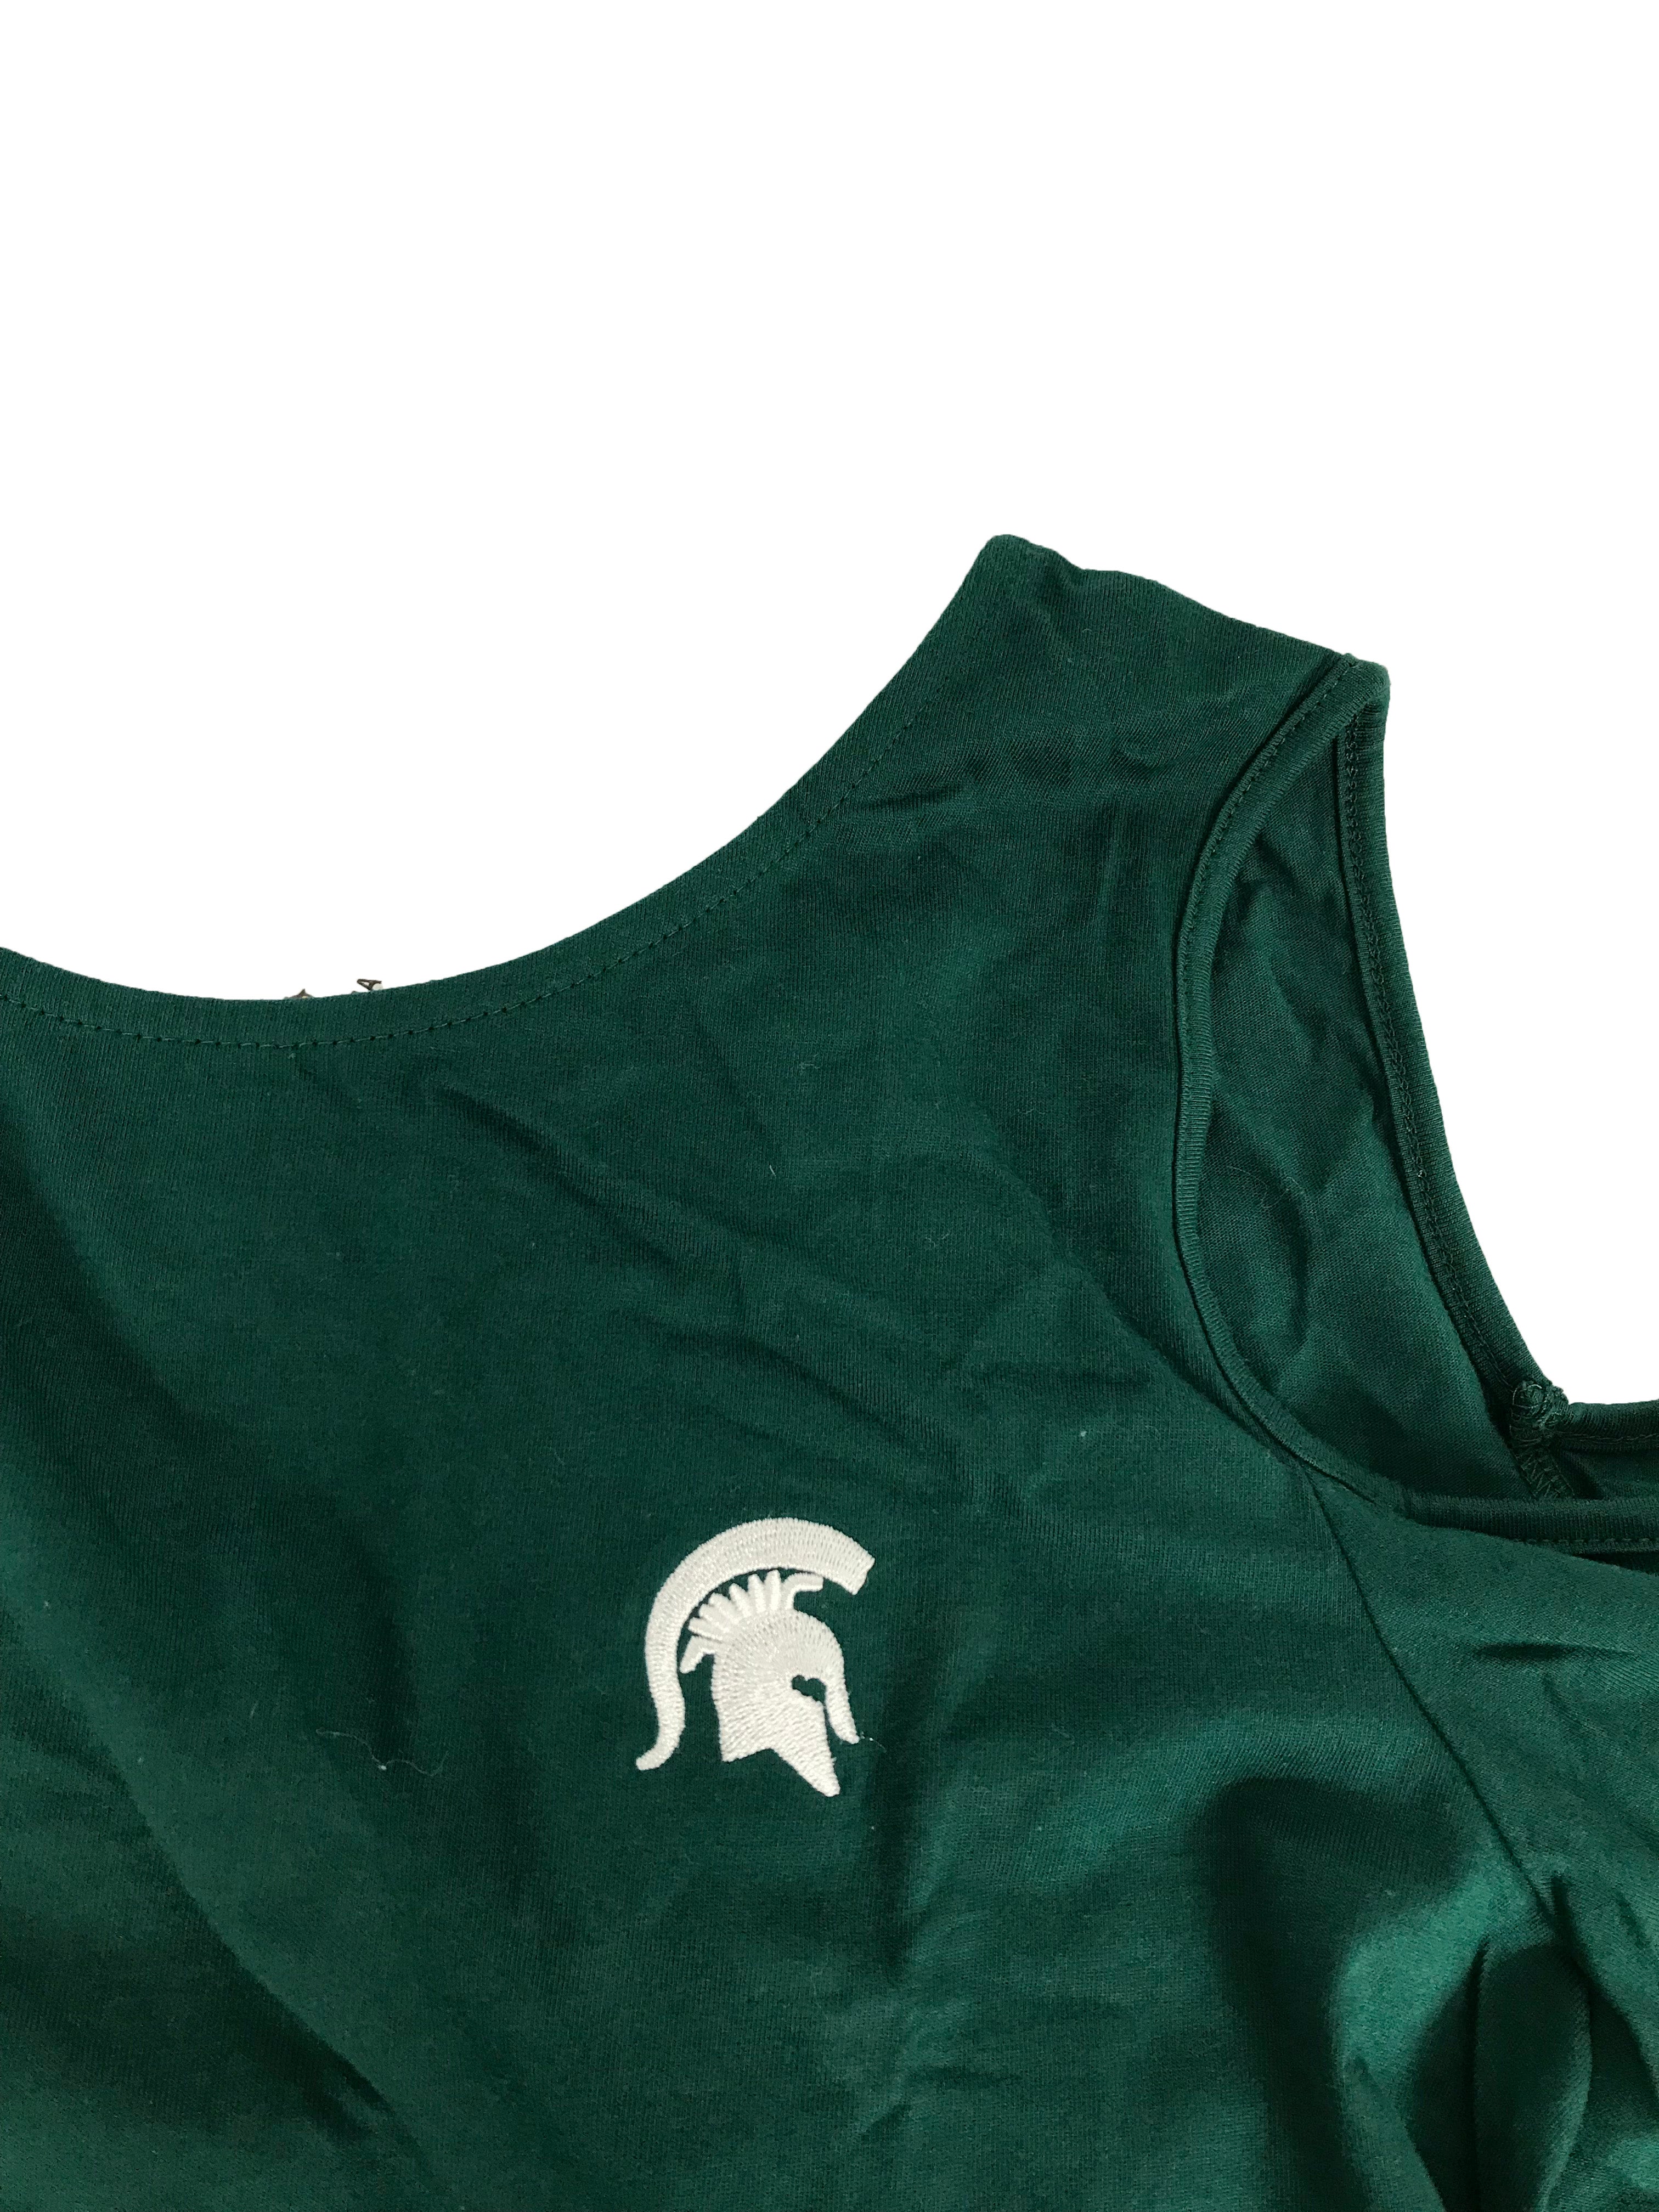 MSU Green Cutout Shoulder Shirt Women's Size XL